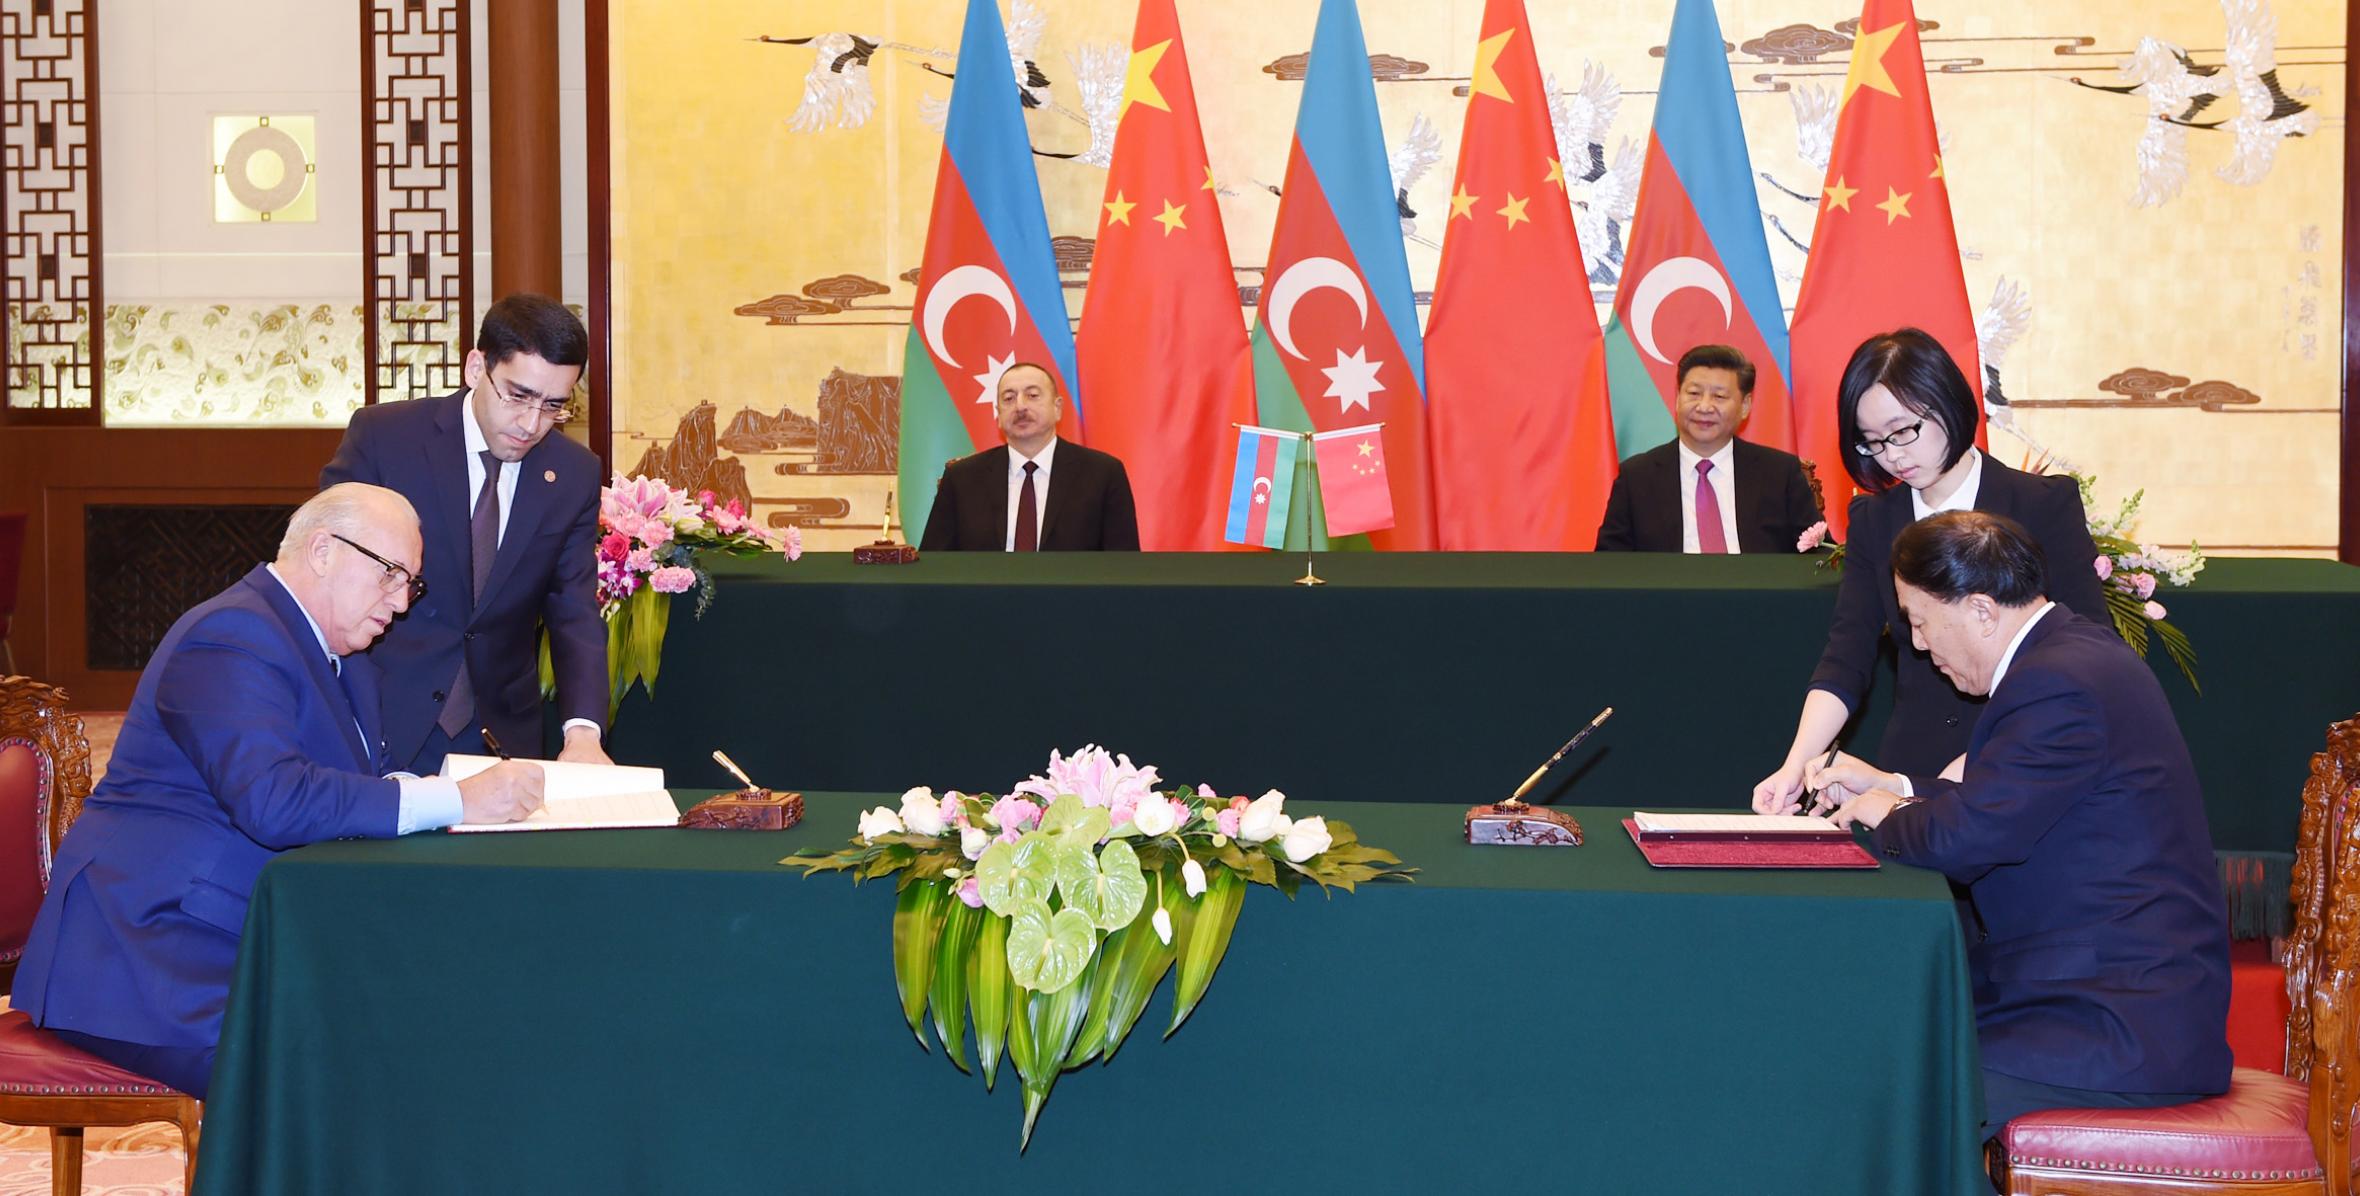 В расширенном составе состоялась церемония подписания азербайджано-китайских документов